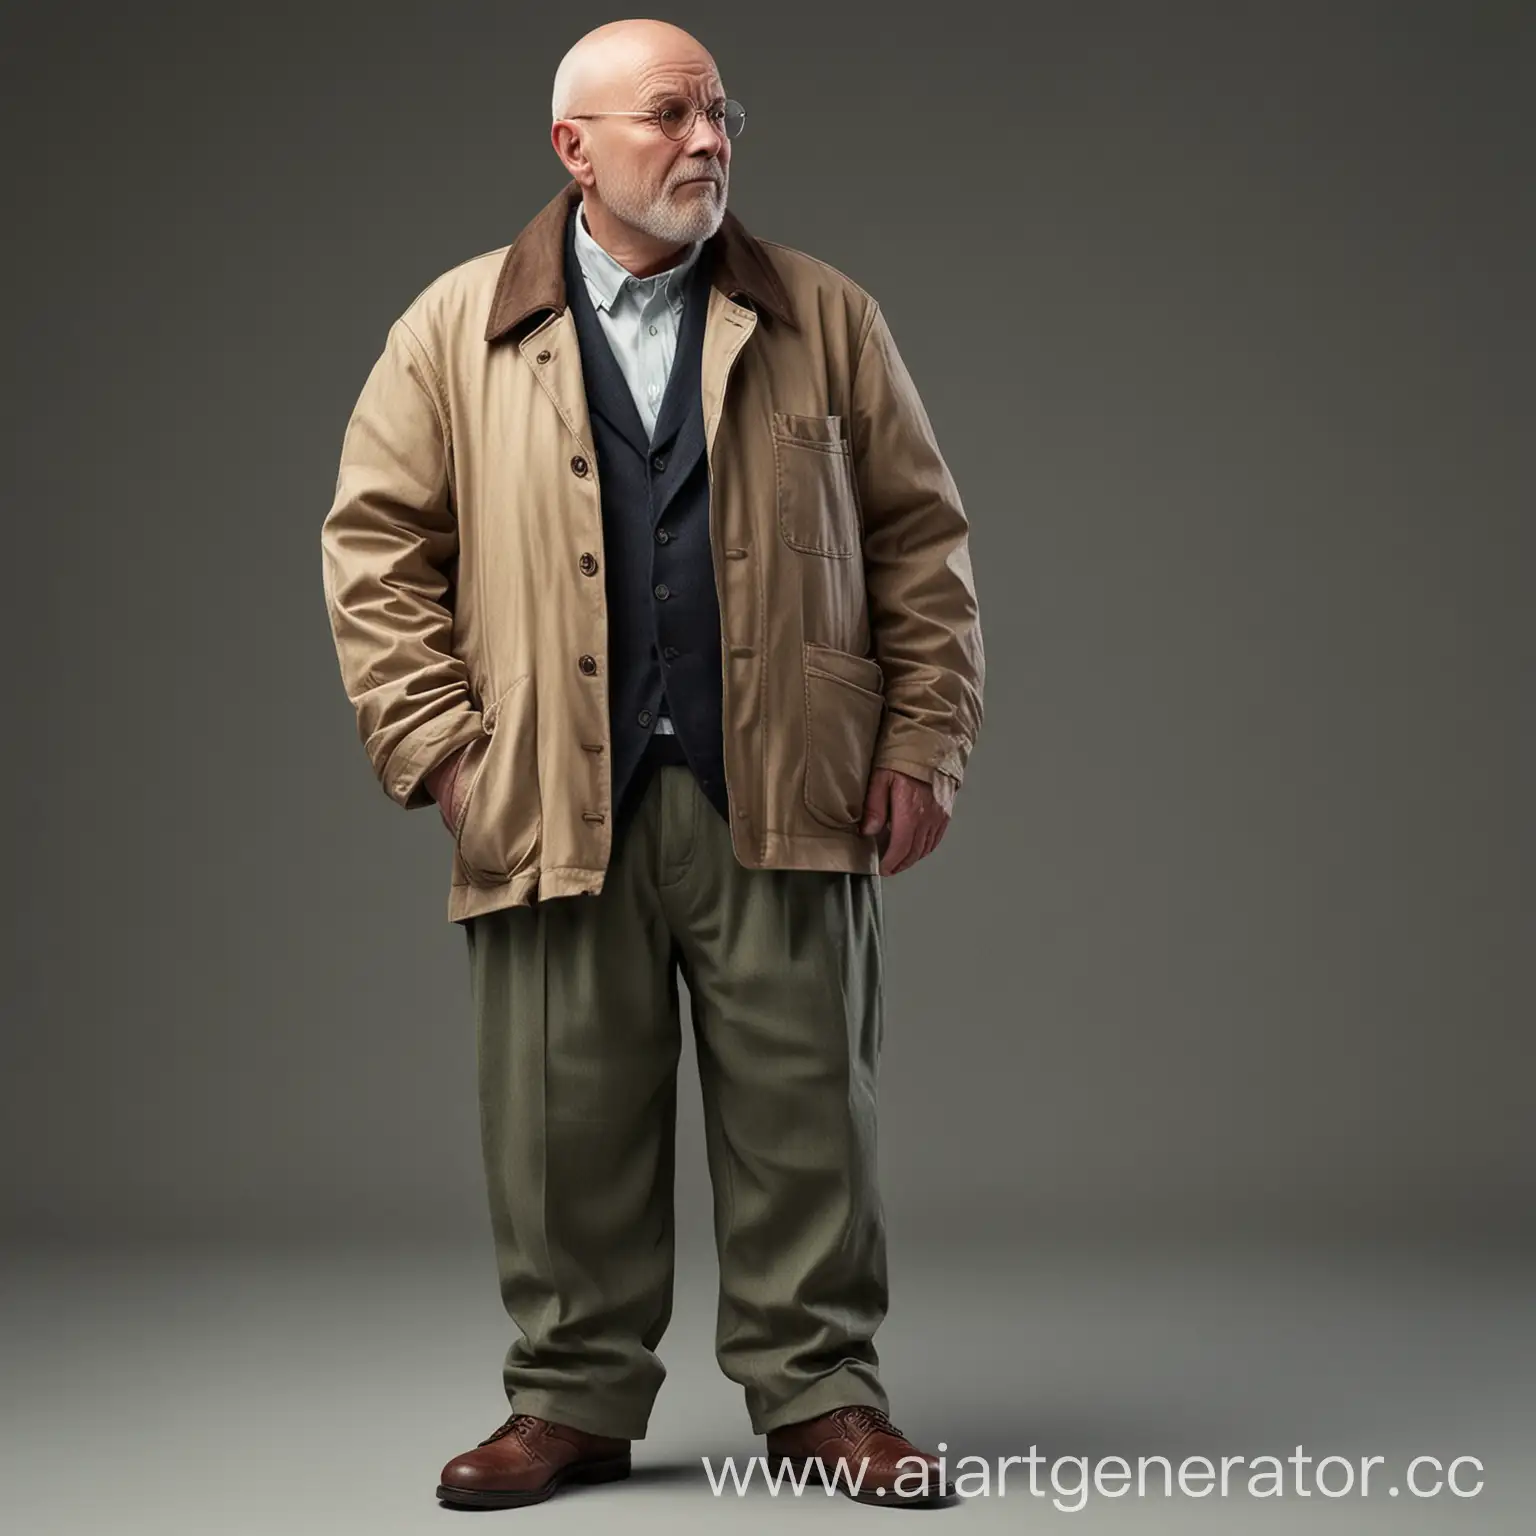 в пиджаке и брюках, толстый, лысый и старый мужчина в стиле 50-х годов 